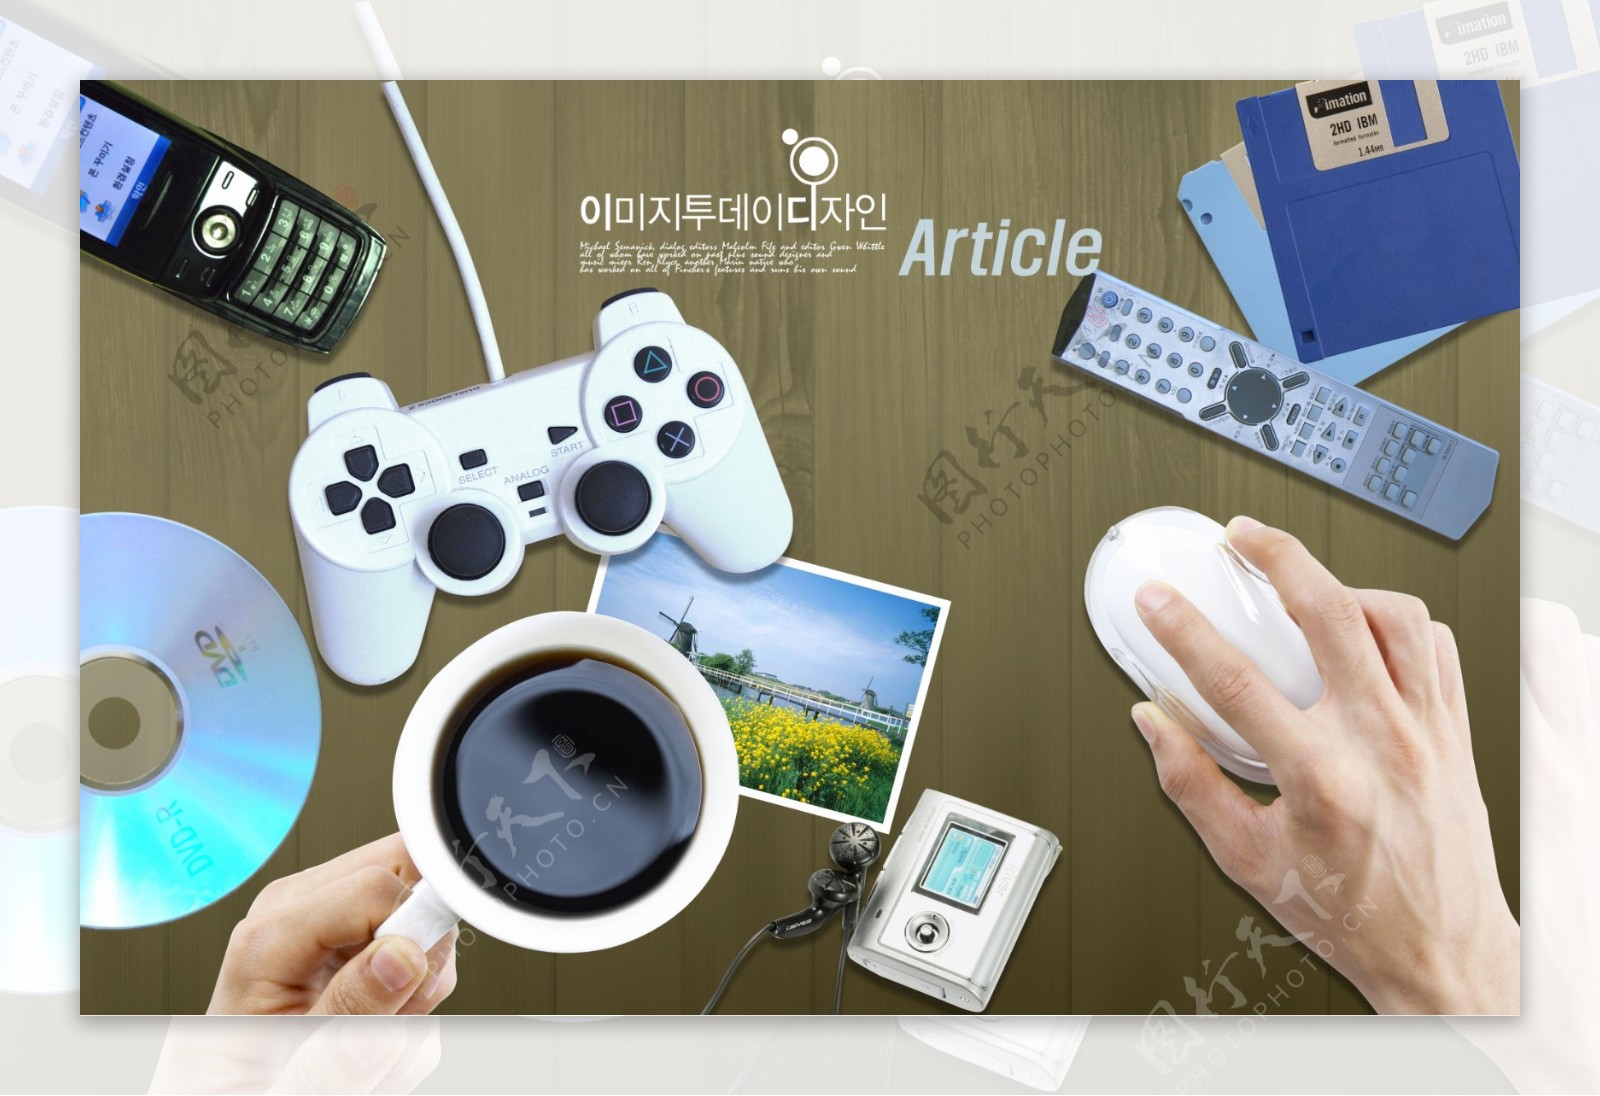 咖啡遥控器mp3光盘手机游戏机鼠标日韩盛典